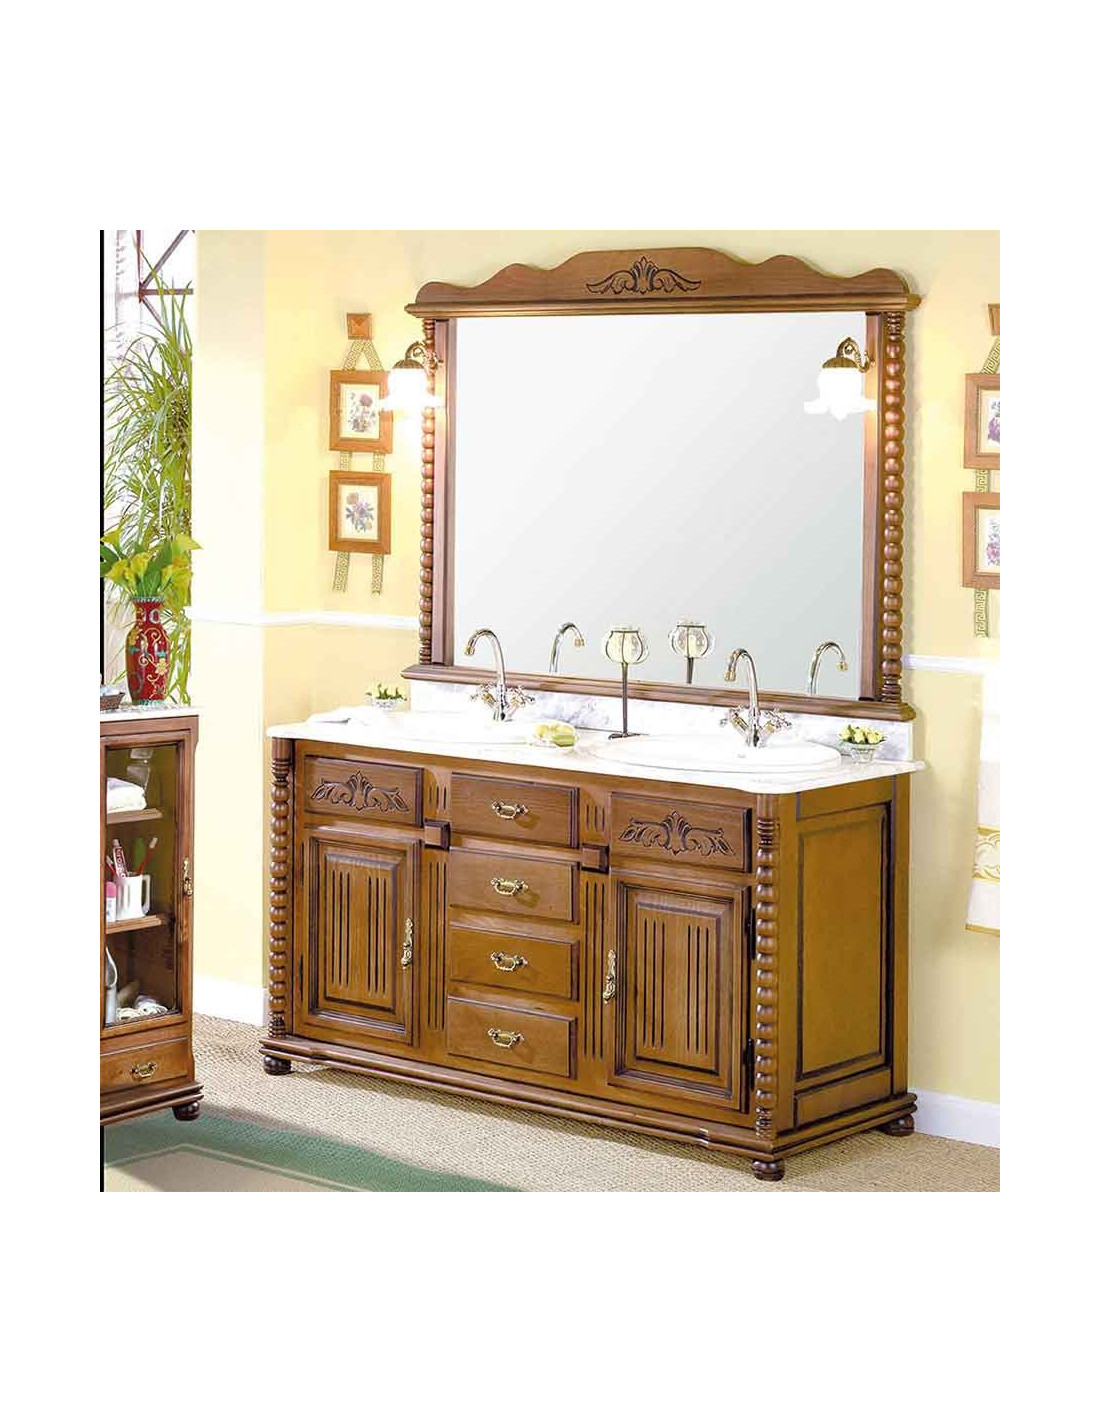 encimera de baño de madera de olivo  Encimeras baño, Mueble baño madera,  Baños de estilo rústico